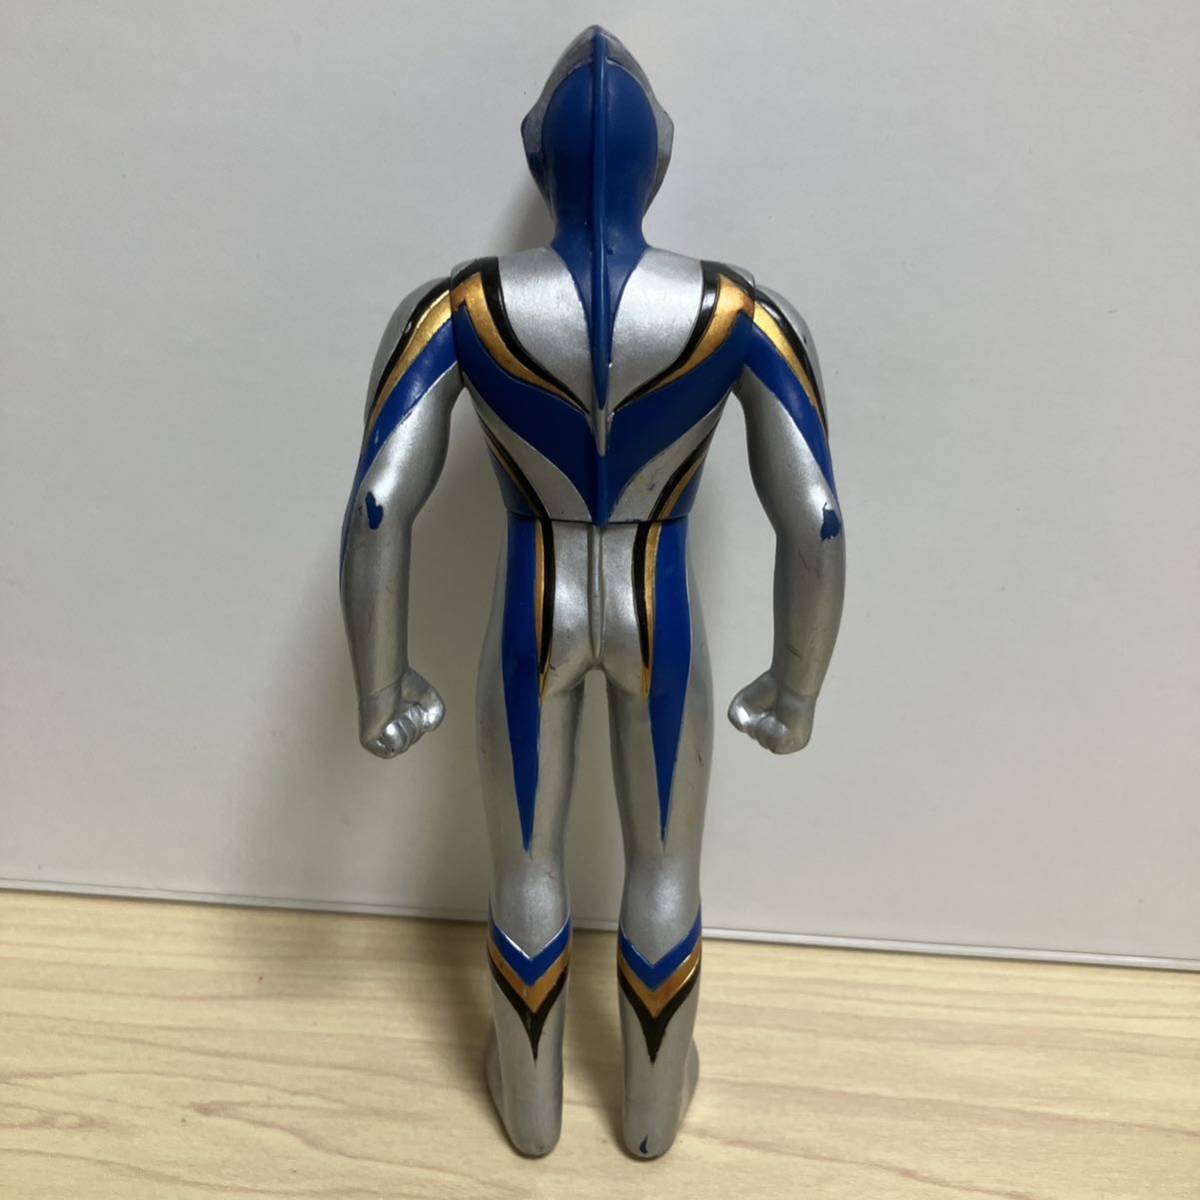  Ultra герой серии nise Ultraman Dyna sofvi Bandai 1996 год фигурка Ultraman Dyna 